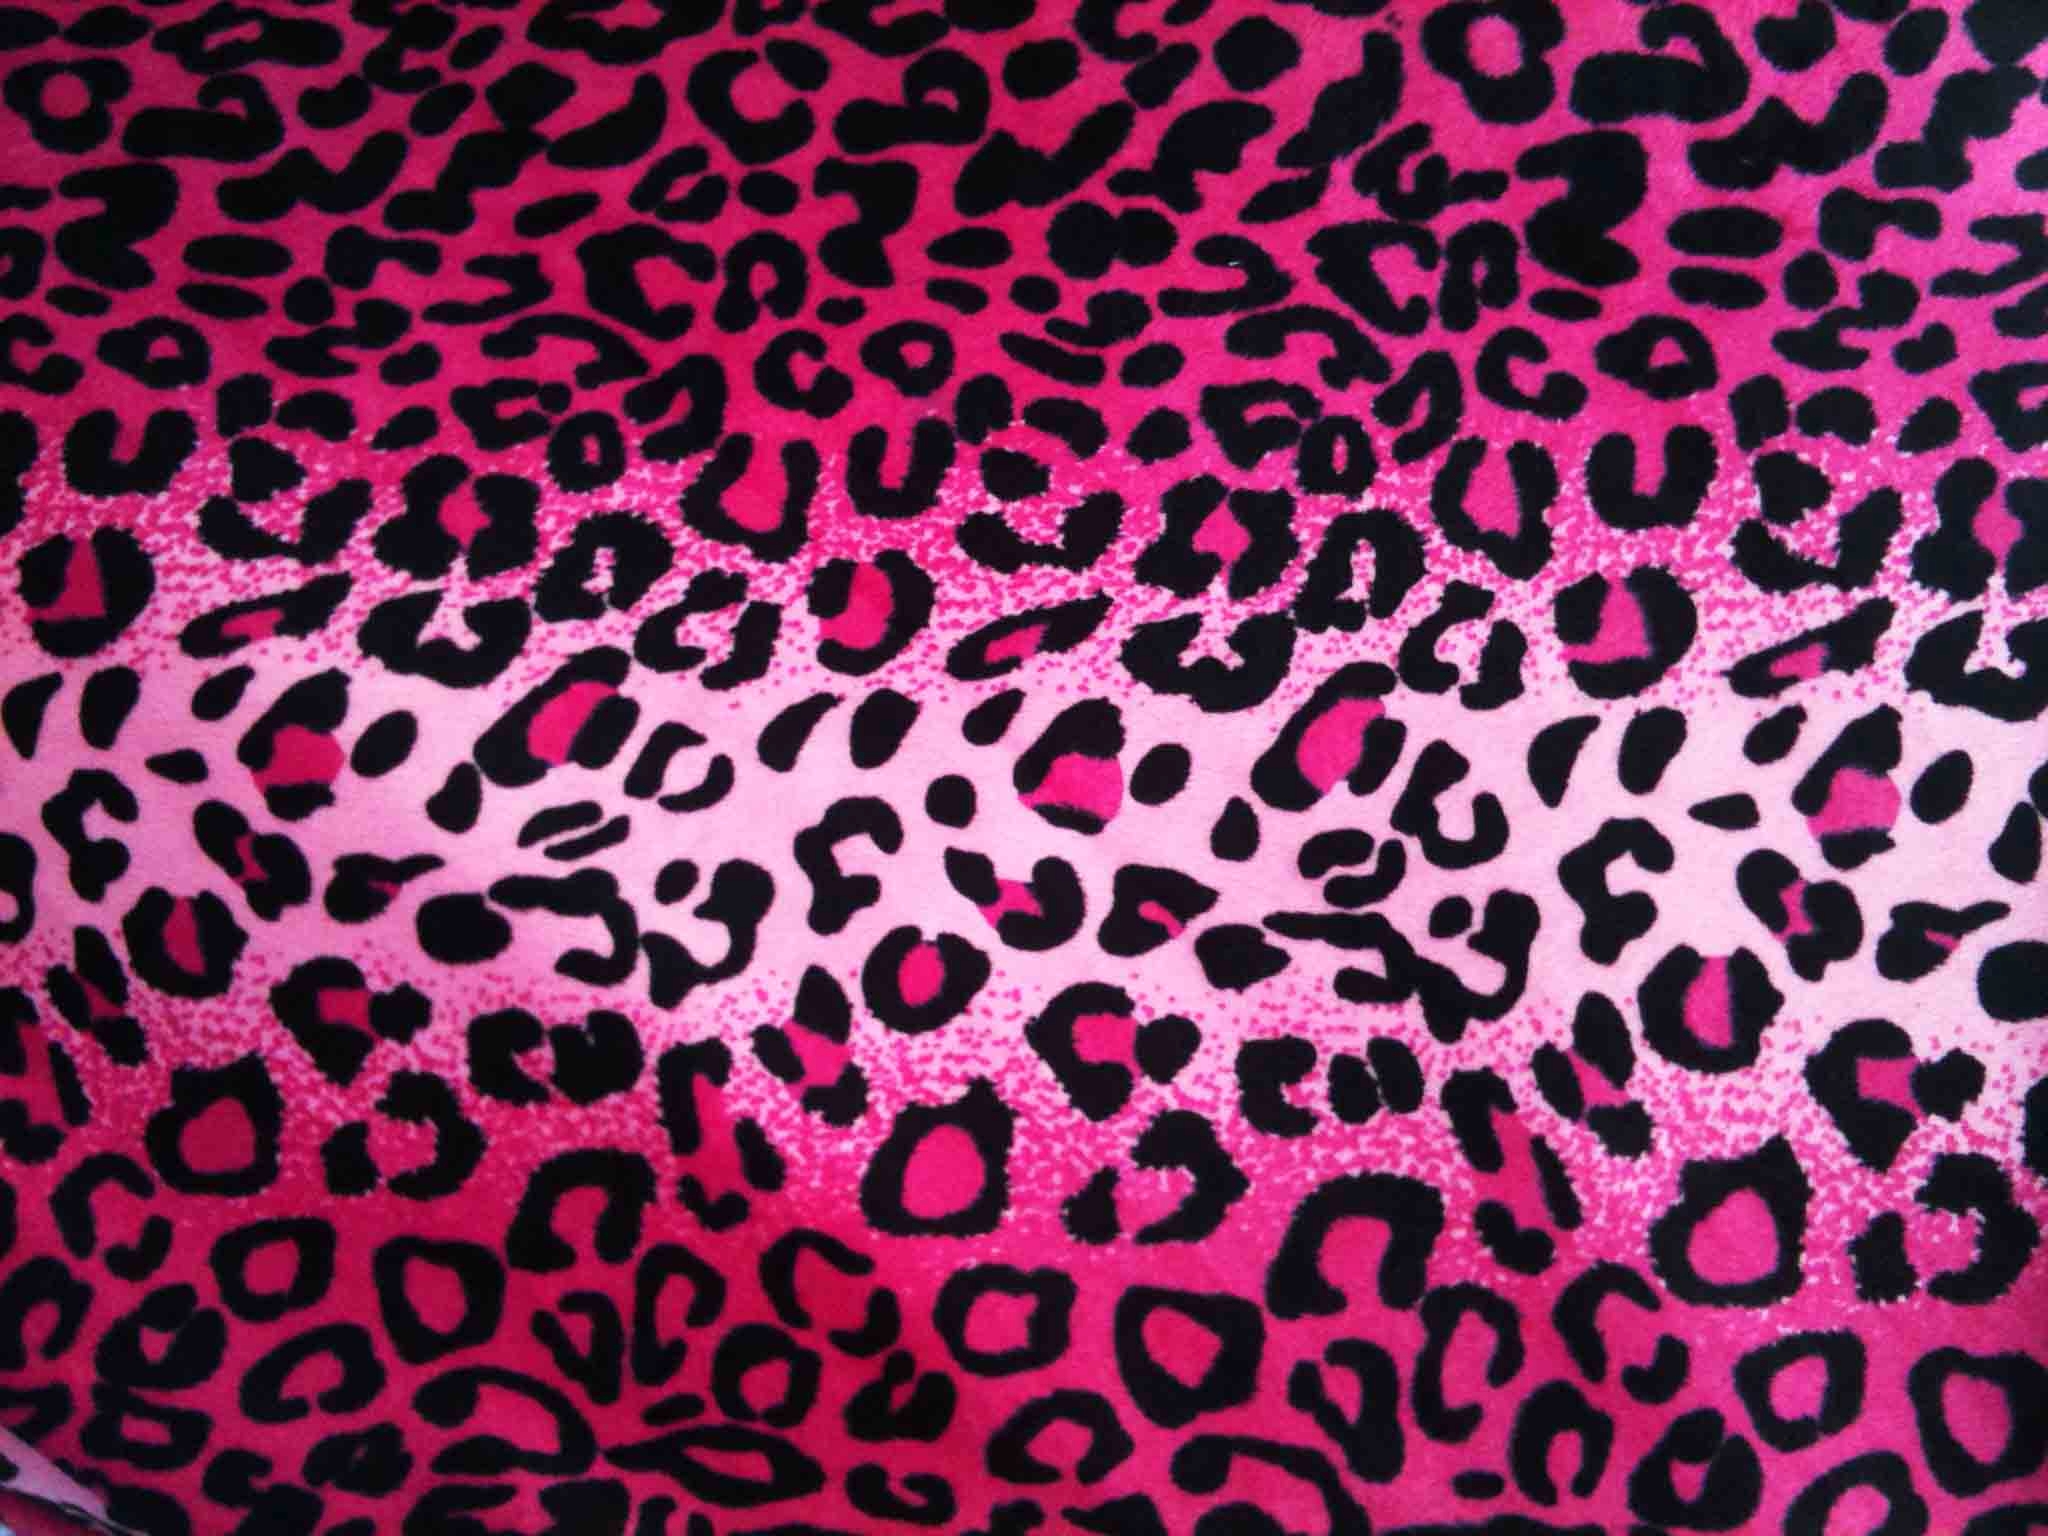 [45+] Glitter Cheetah Print Wallpapers | WallpaperSafari